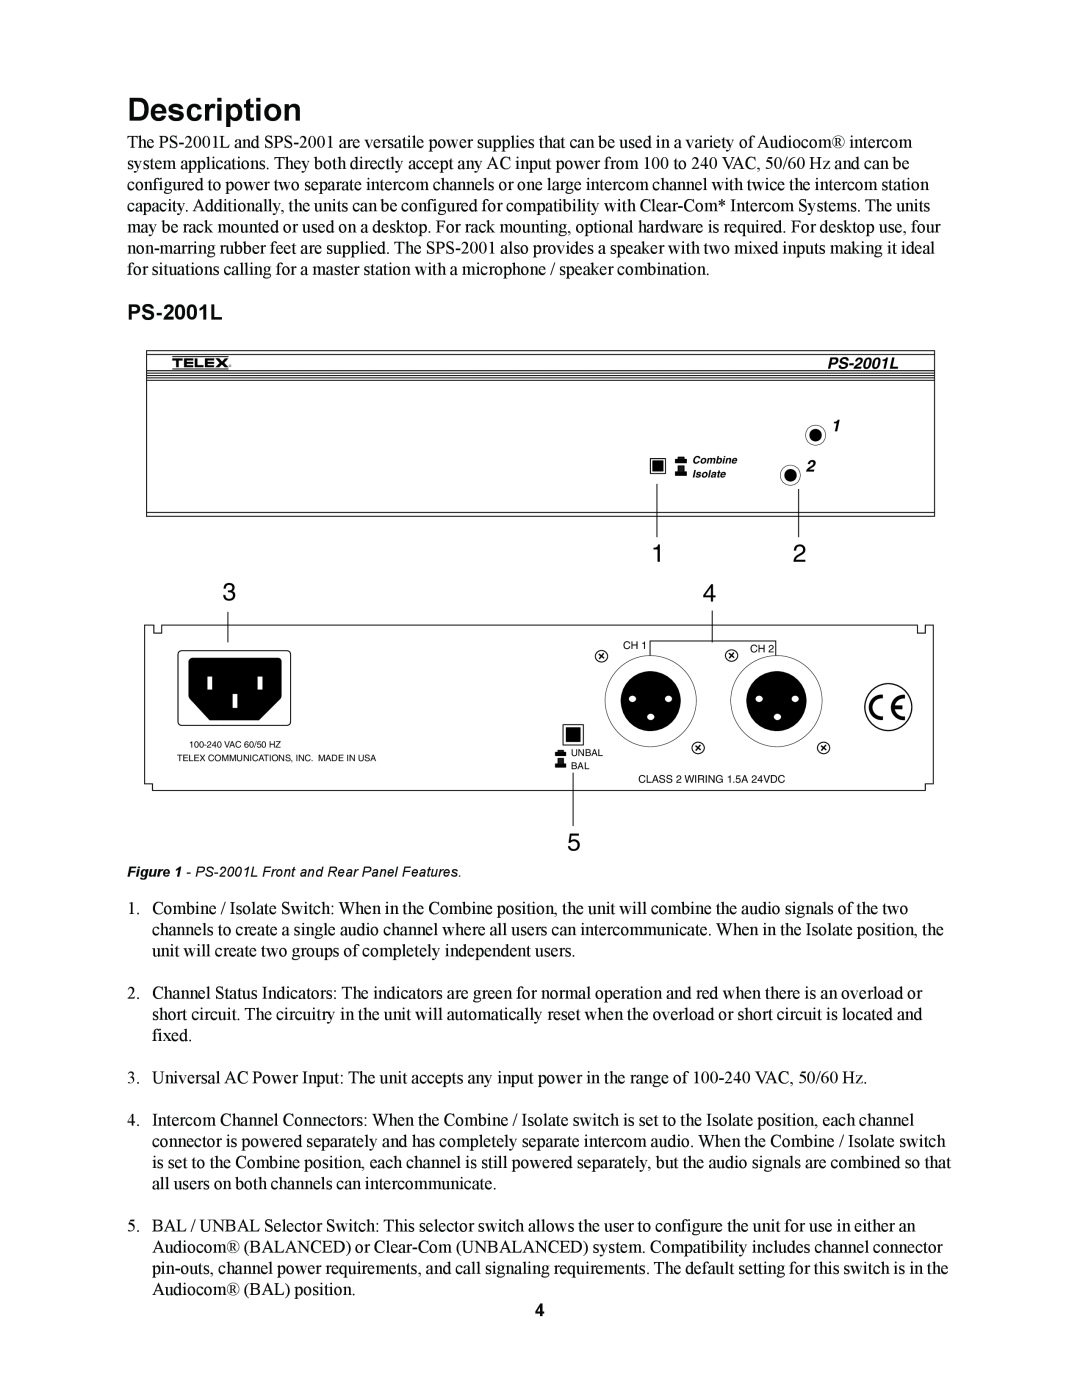 Telex PS-2001L, SPS-2001 manual Description 